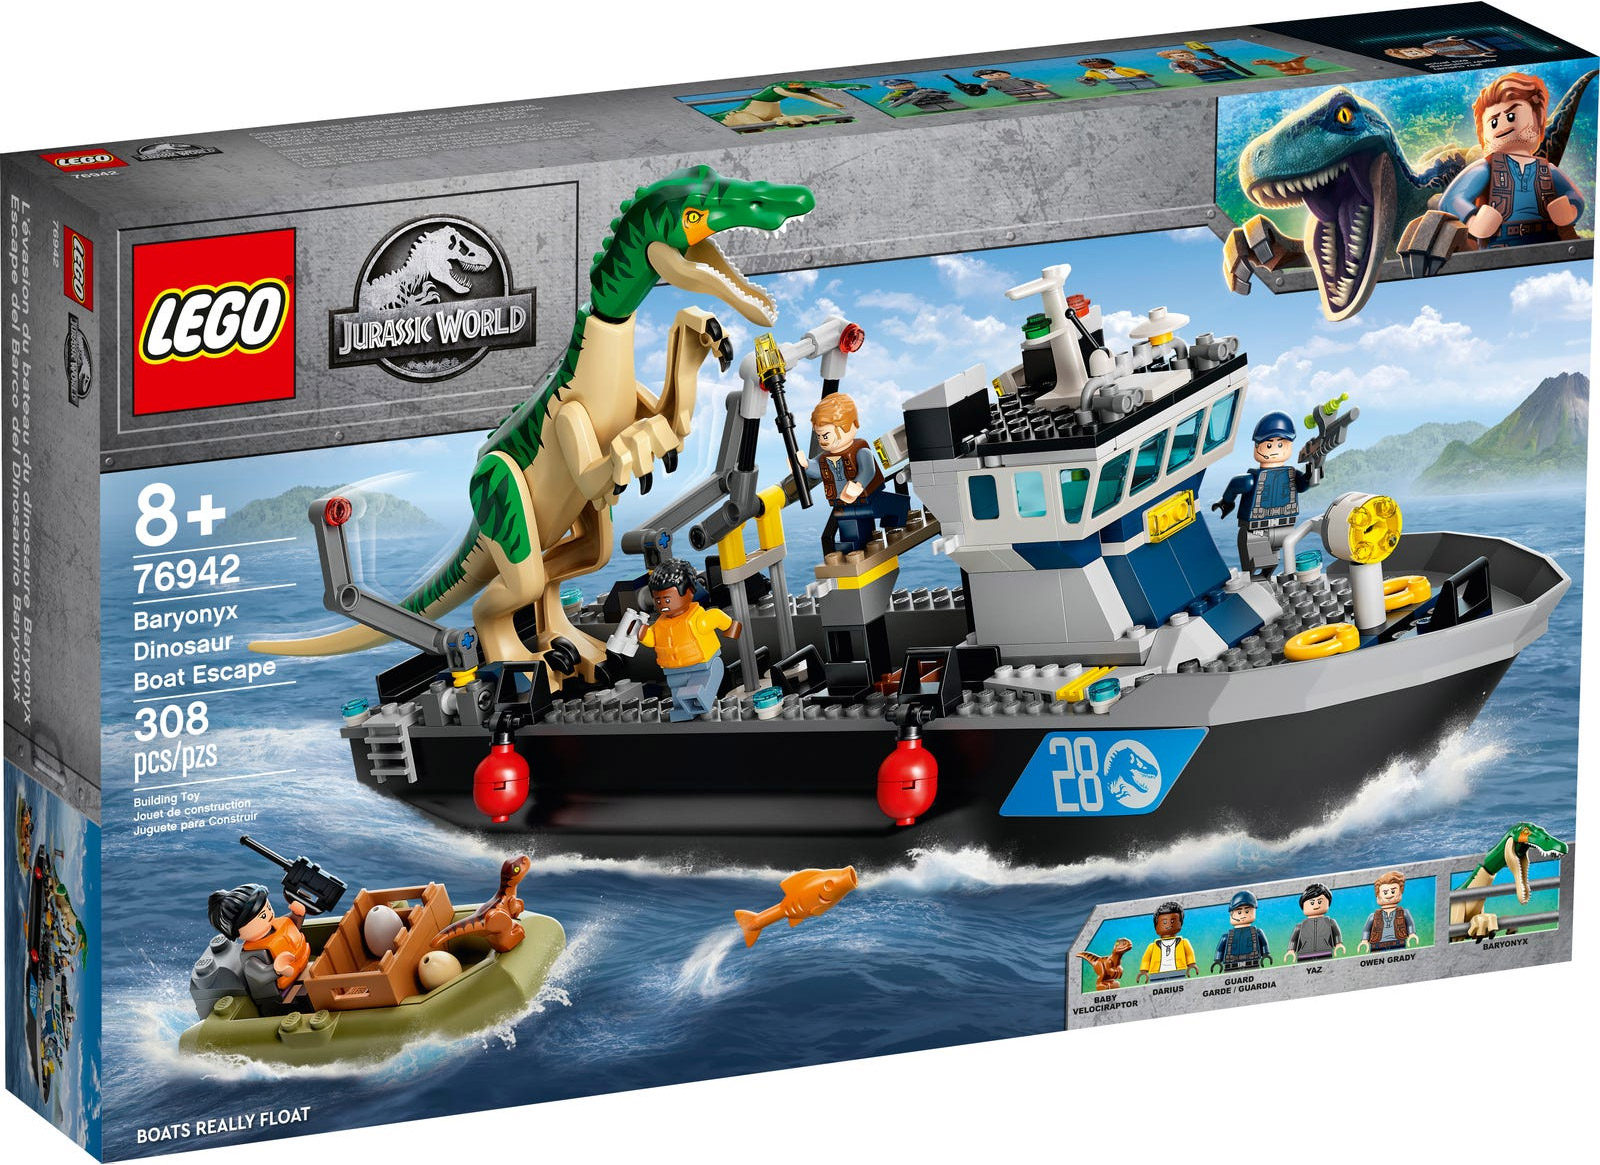 Aperçu des nouveaux LEGO Jurassic World Septembre 2021